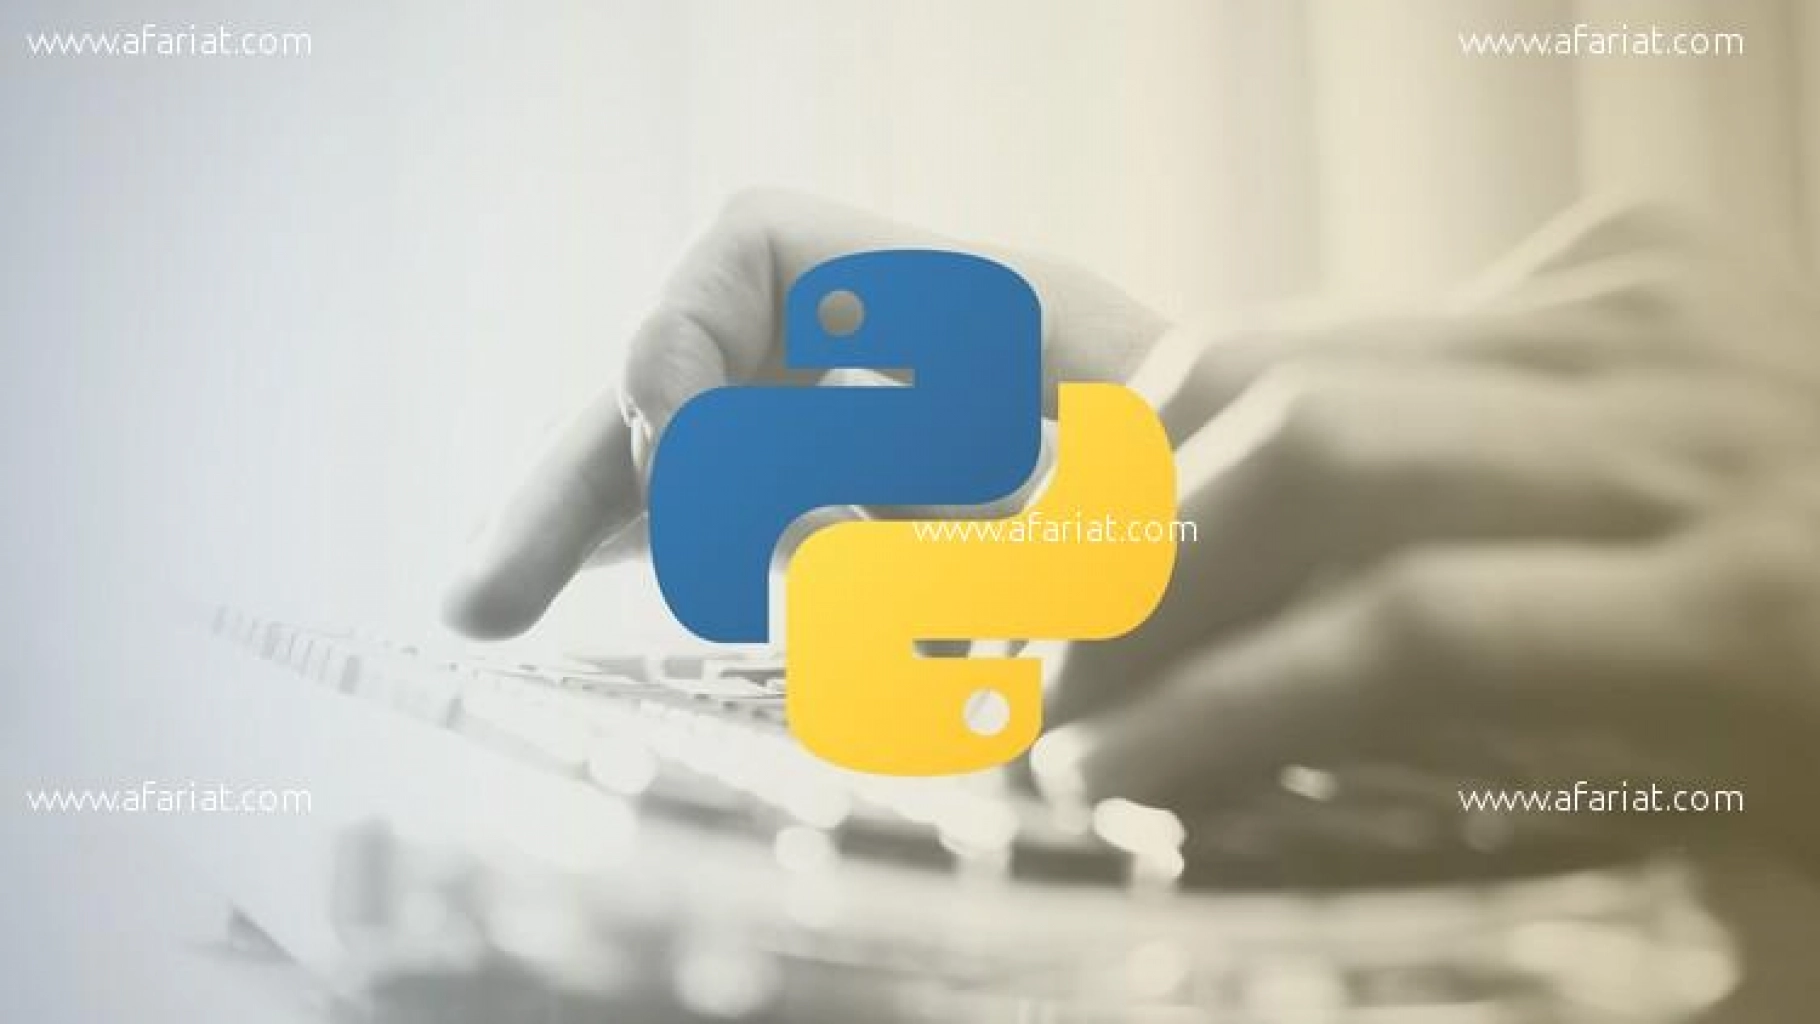 IMS : Formation professionnelle #Python avec promo 10%